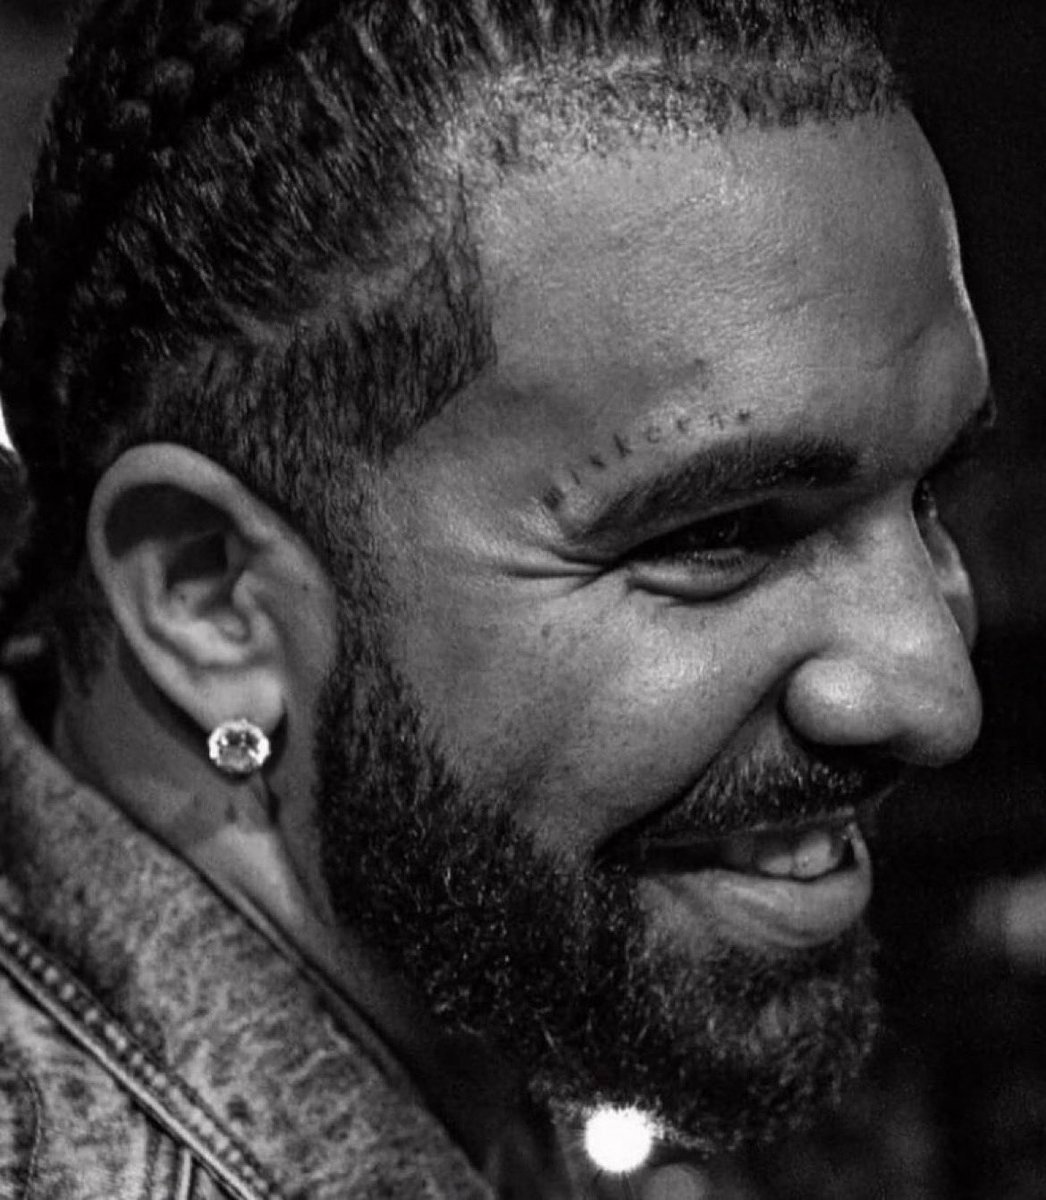 Drake got a new face tattoo👀